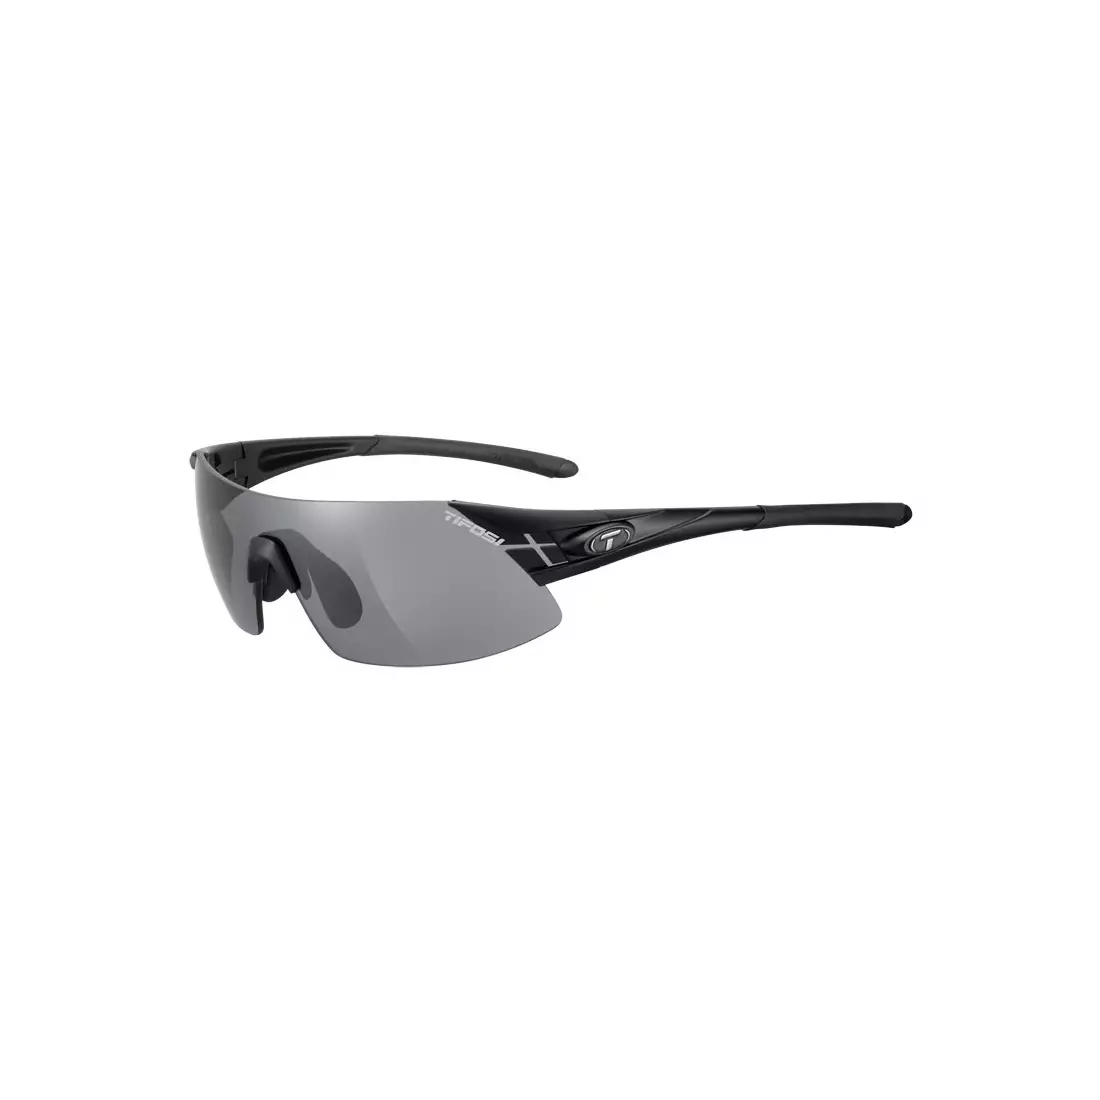 TIFOSI Sportbrillen mit austauschbaren Gläsern podium XC matte black (Smoke, AC Red, Clear) TFI-1070100101